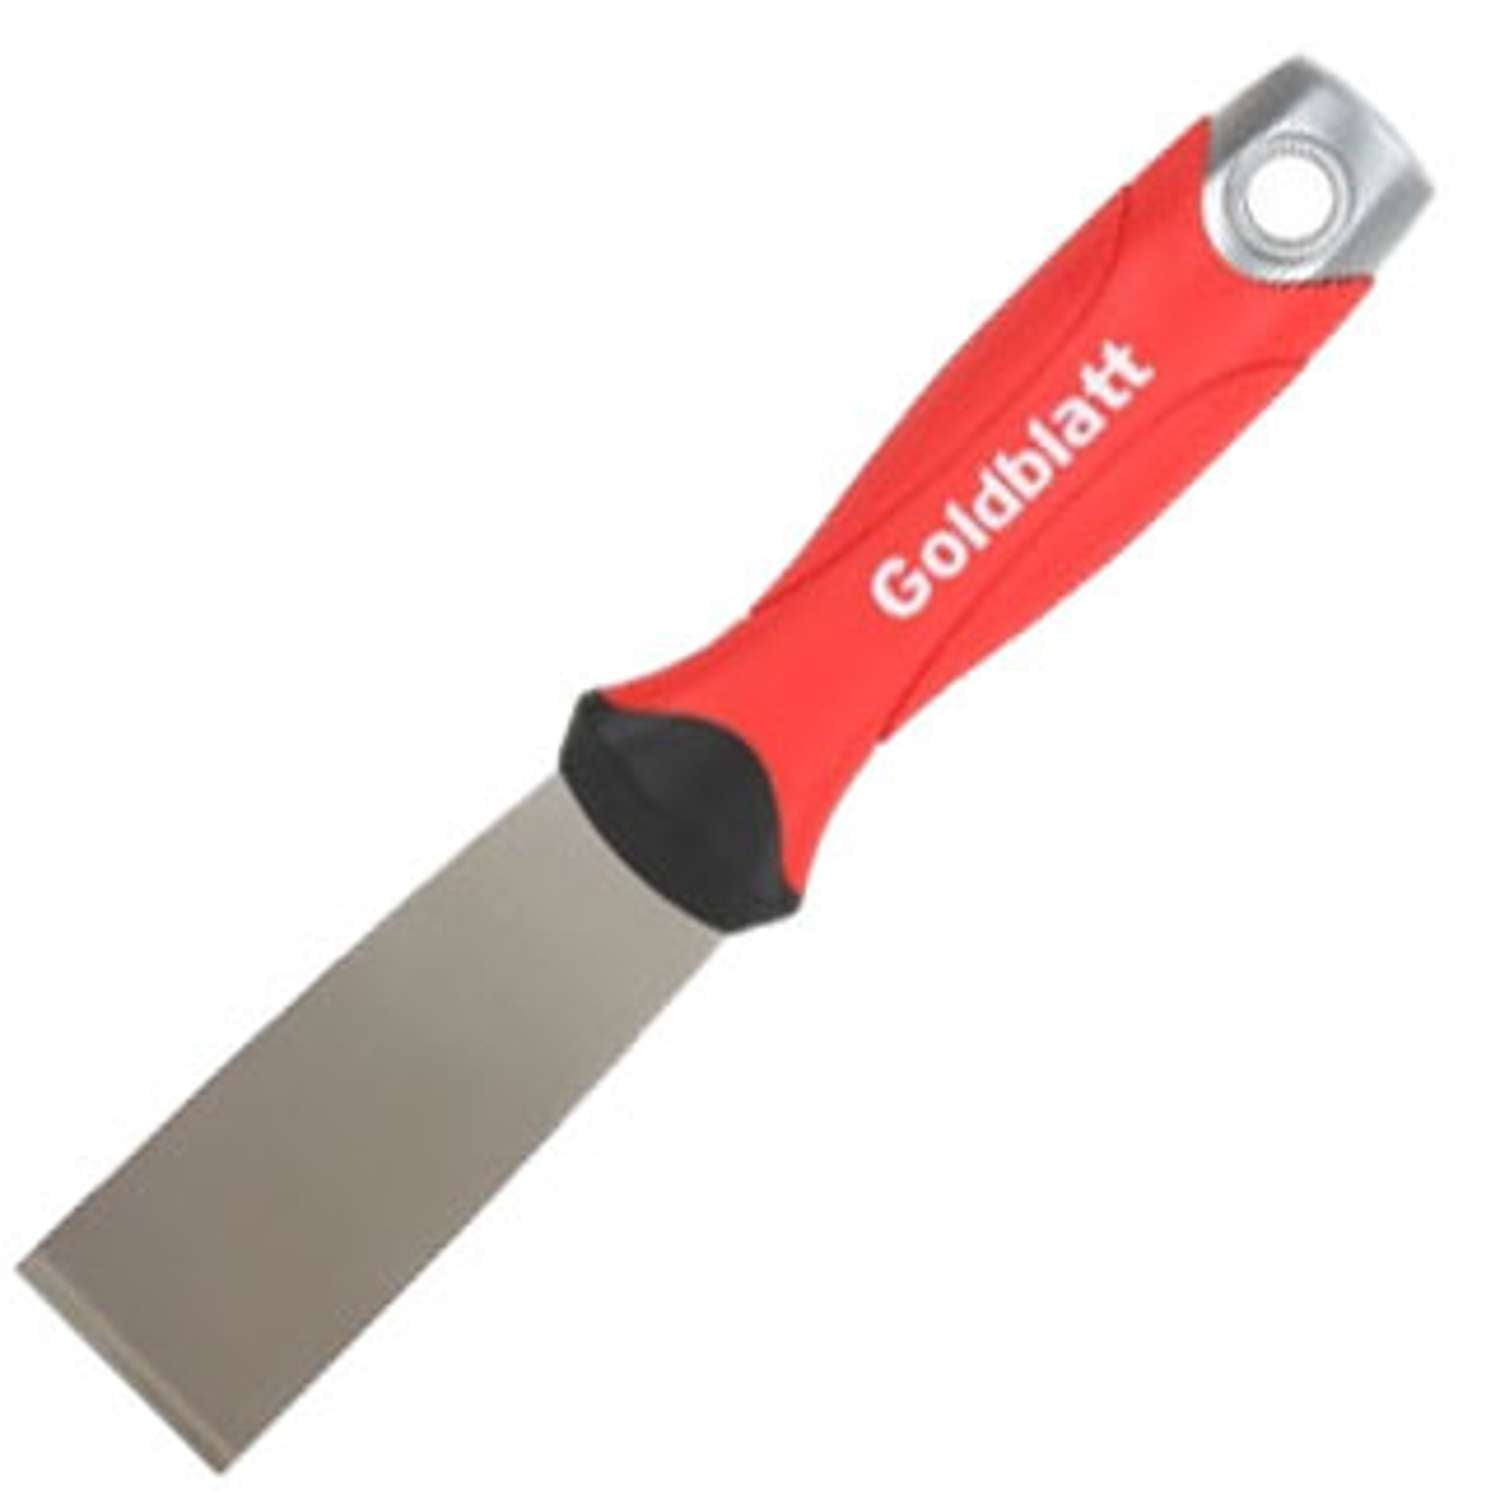 Se Goldblatt Stiv spartel/skraber soft grip med hammer ende 32 mm HEAVY DUTY Stift hos Toolster.dk